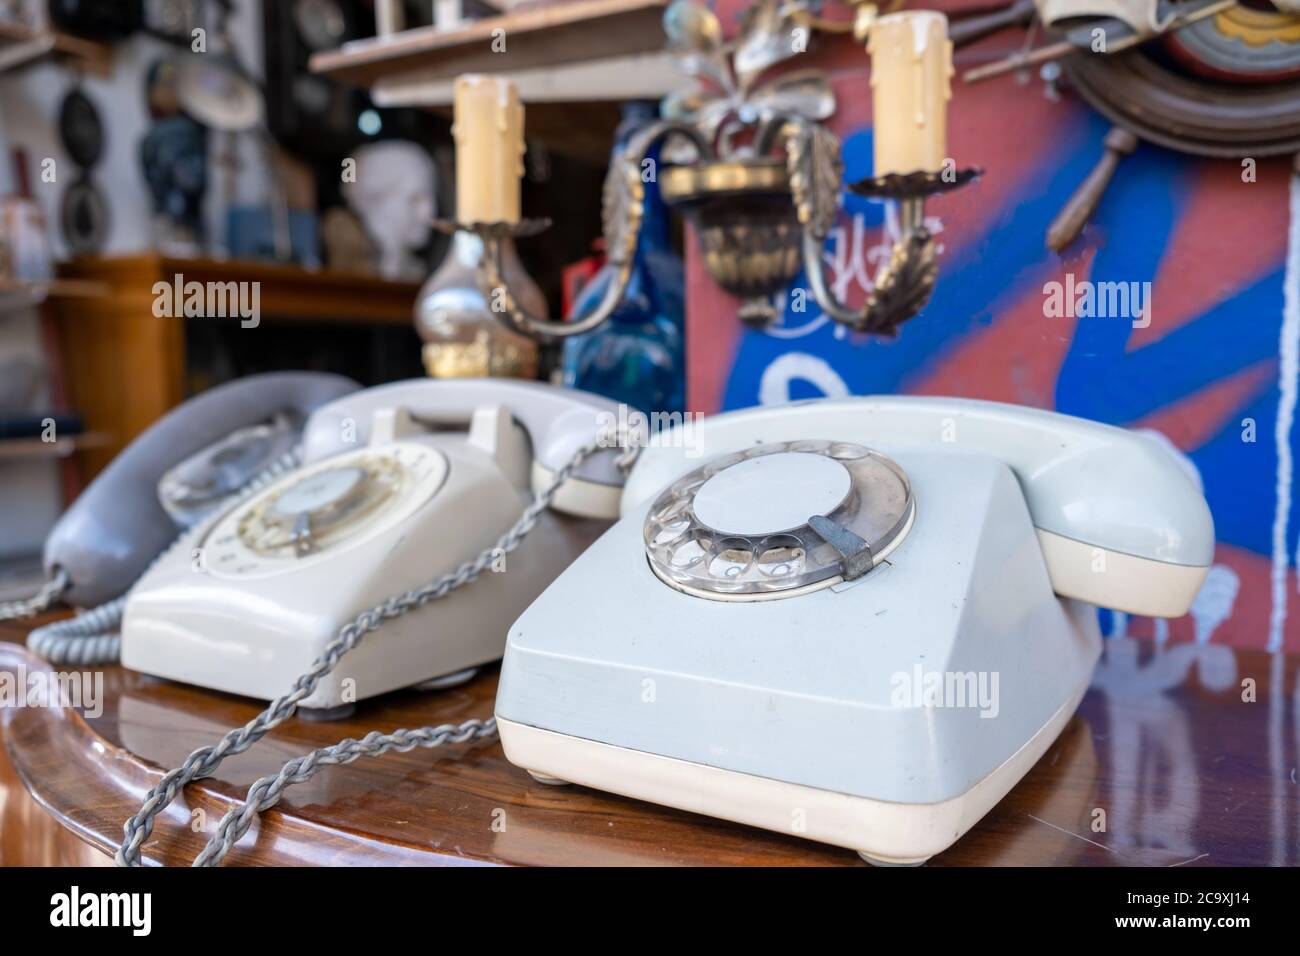 Telefono vendemmia in un mercato delle pulci . I vecchi telefoni retro su un tavolo di legno, vista closeup, offuscare lo sfondo di un negozio d'antiquariato Foto Stock